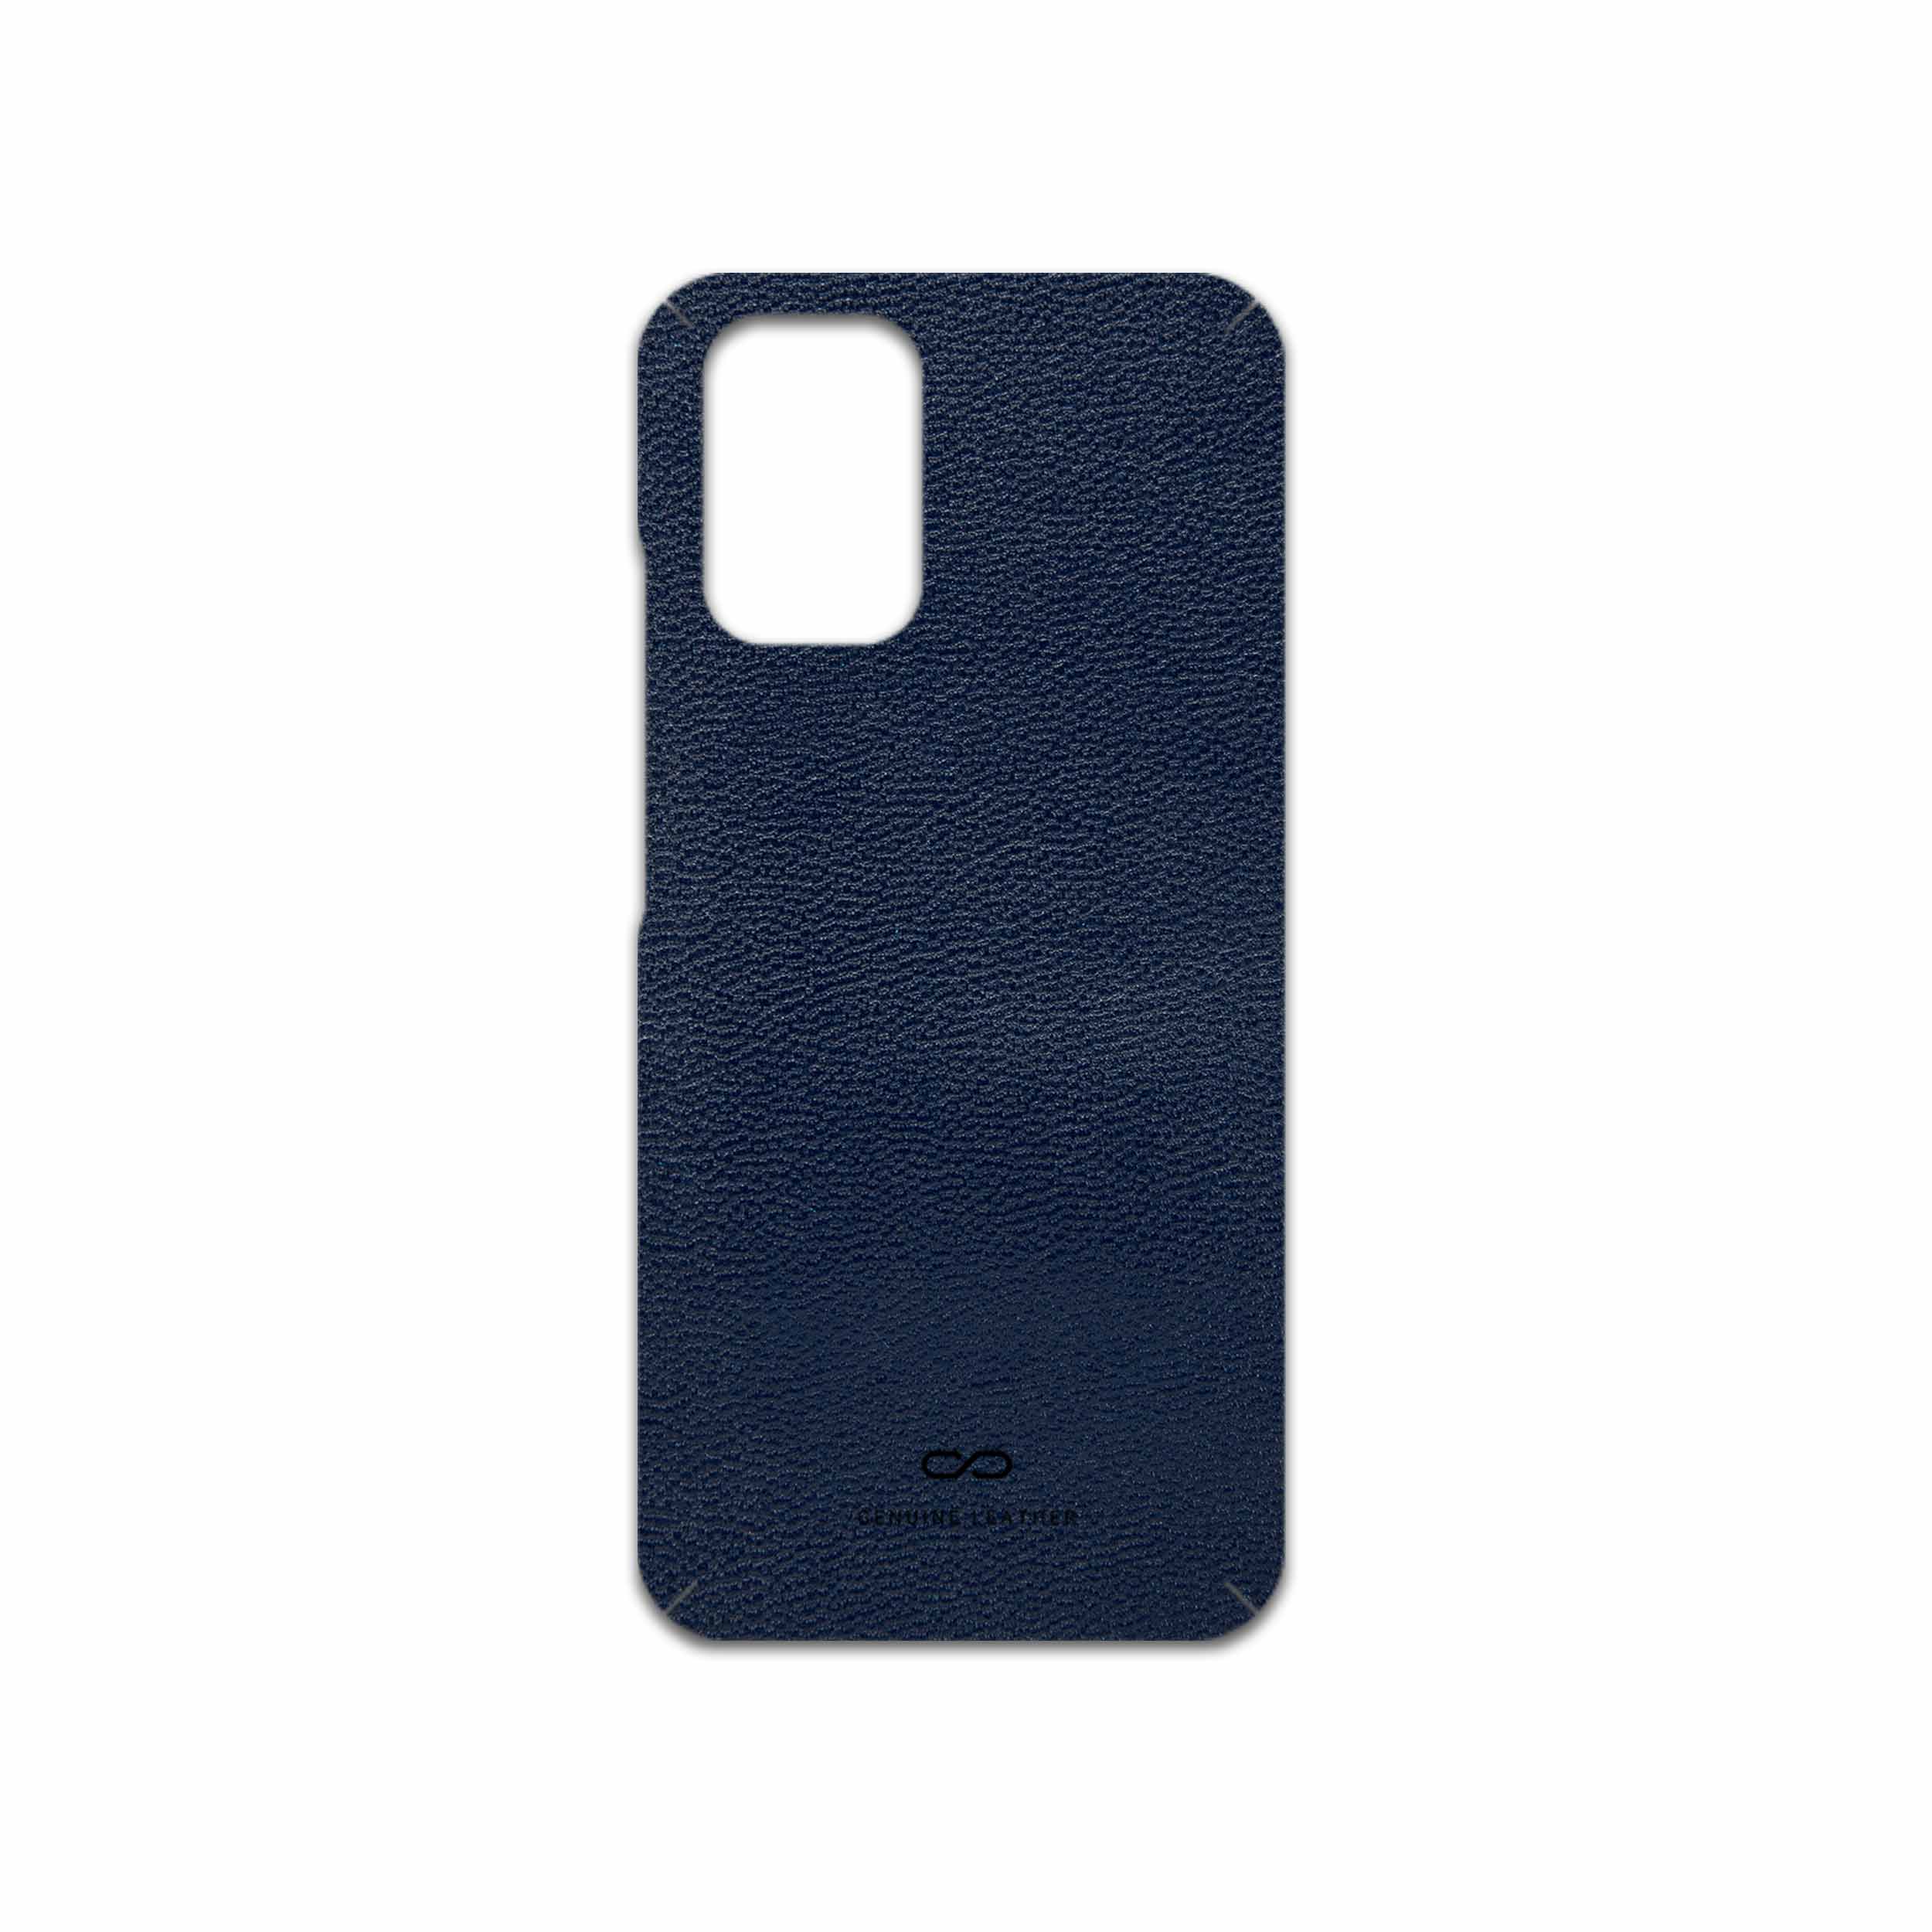 برچسب پوششی ماهوت مدل Deep-Blue-Leather مناسب برای گوشی موبایل شیائومی Redmi Note 10s